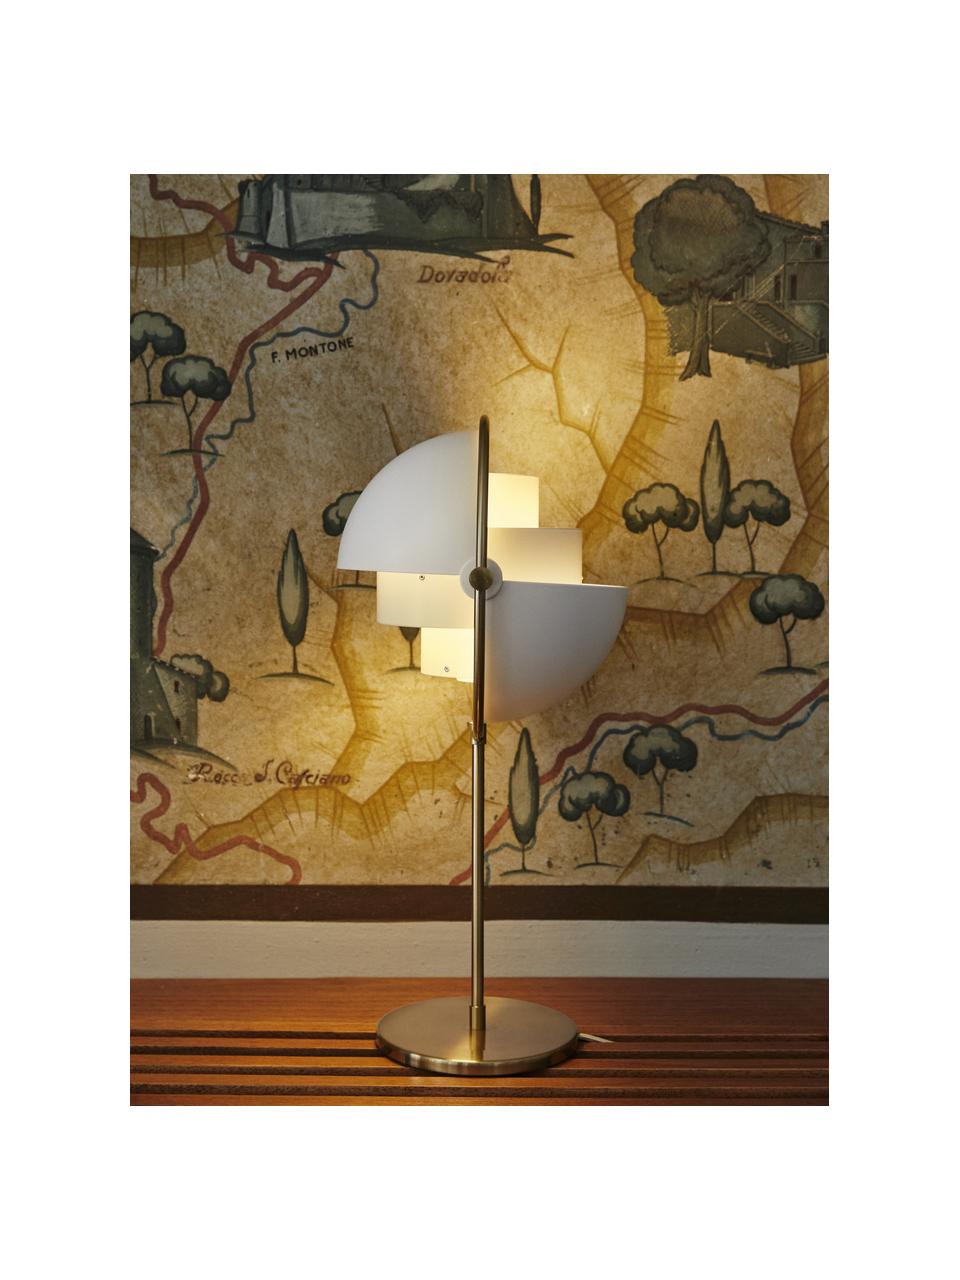 Velká nastavitelná stolní lampa Multi-Lite, Potažený hliník, Matná bílá, matná zlatá, Ø 24 cm, V 50 cm